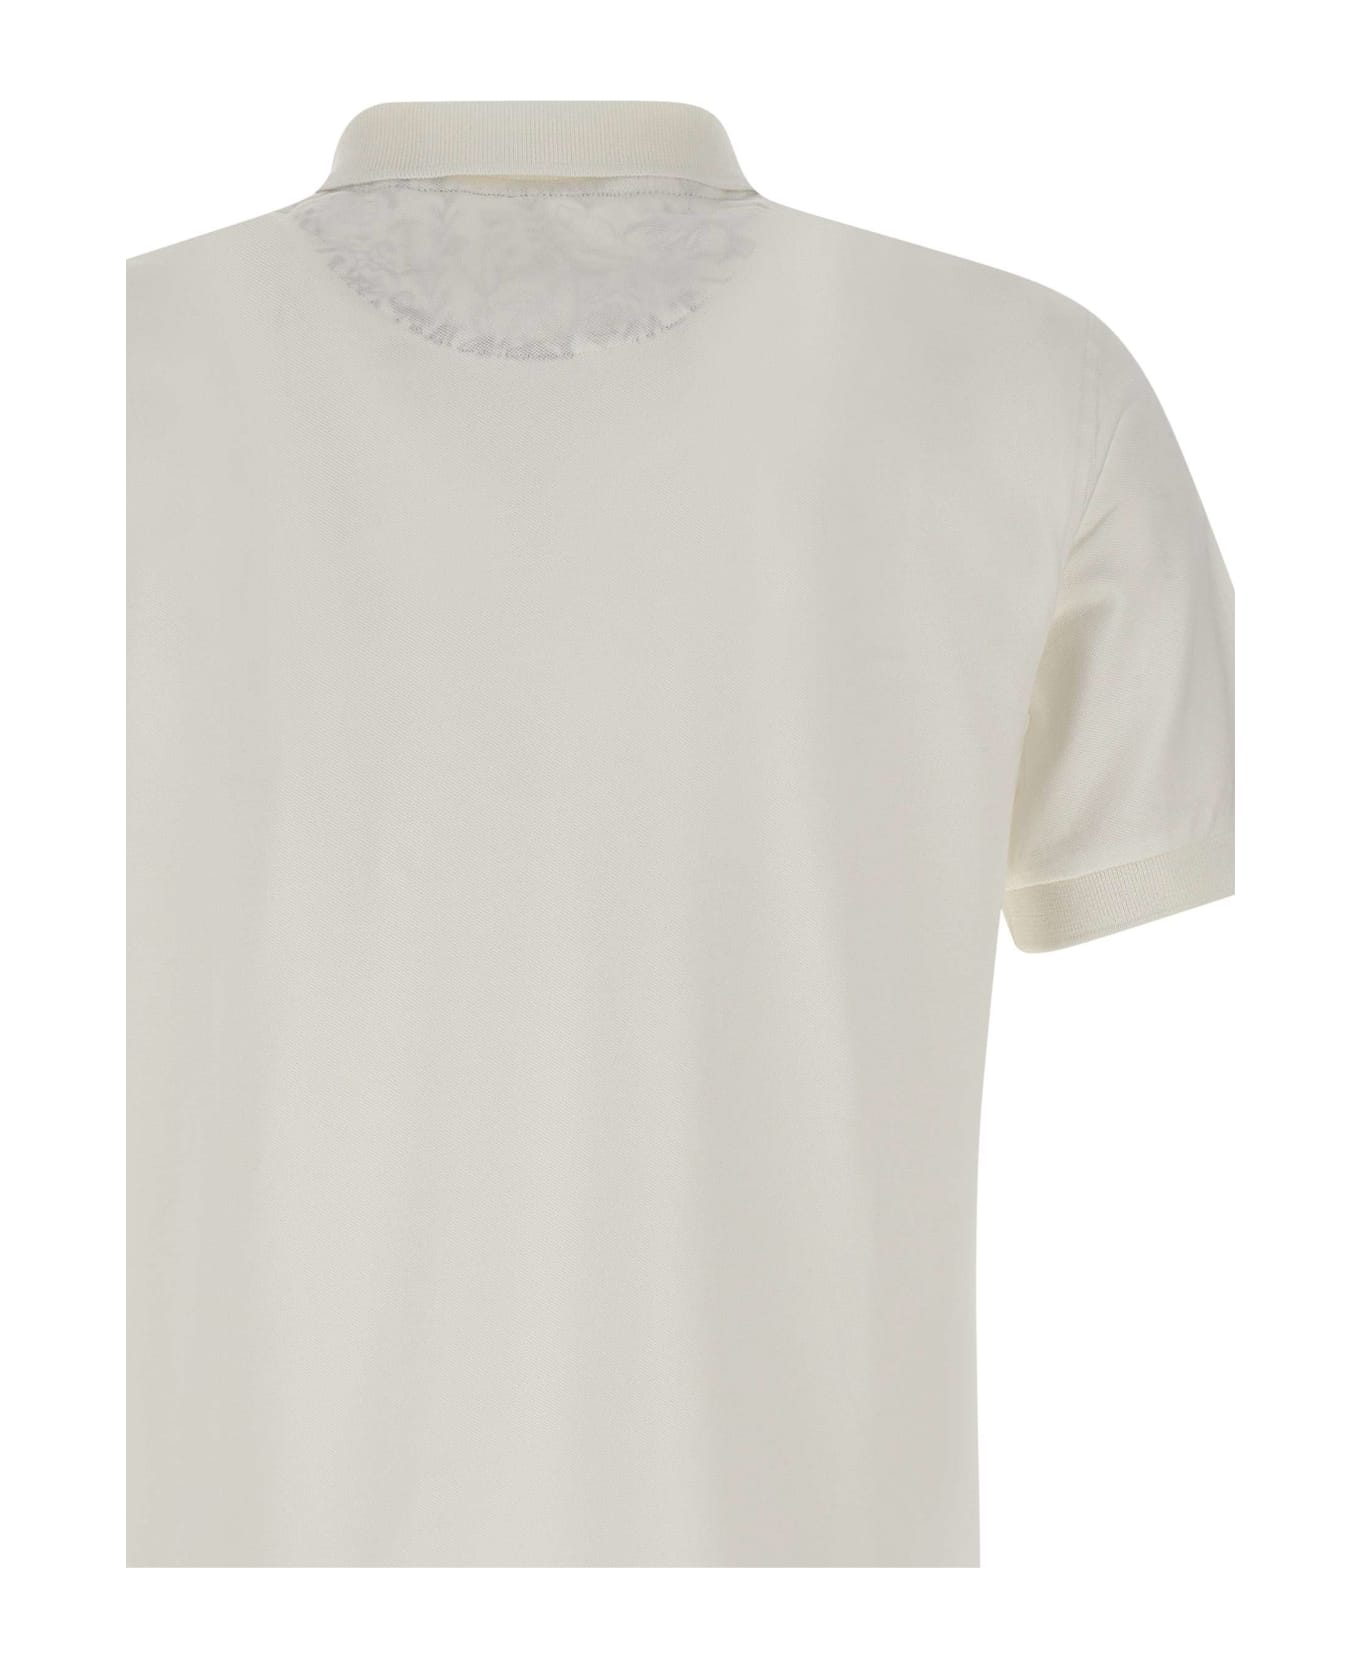 Sun 68 "cold Garment Dye" Polo Shirt Cotton - WHITE ポロシャツ